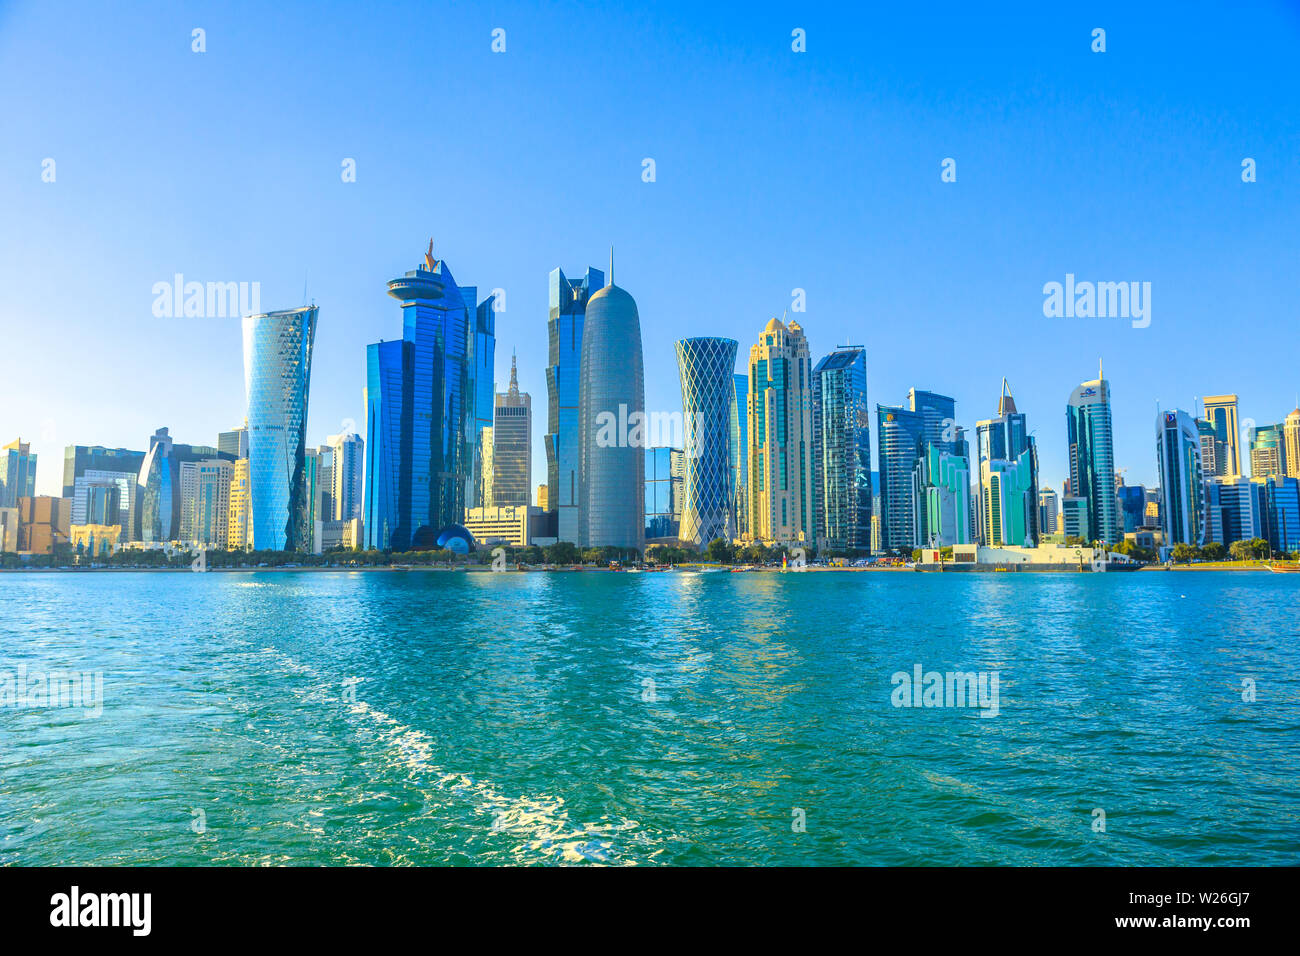 Doha, Katar - Februar 20, 2019: Qatar International Exhibition Centre, Doha Tower, Salam Tower, das World Trade Center und Doha Bank Tower von Dhow siehe Stockfoto